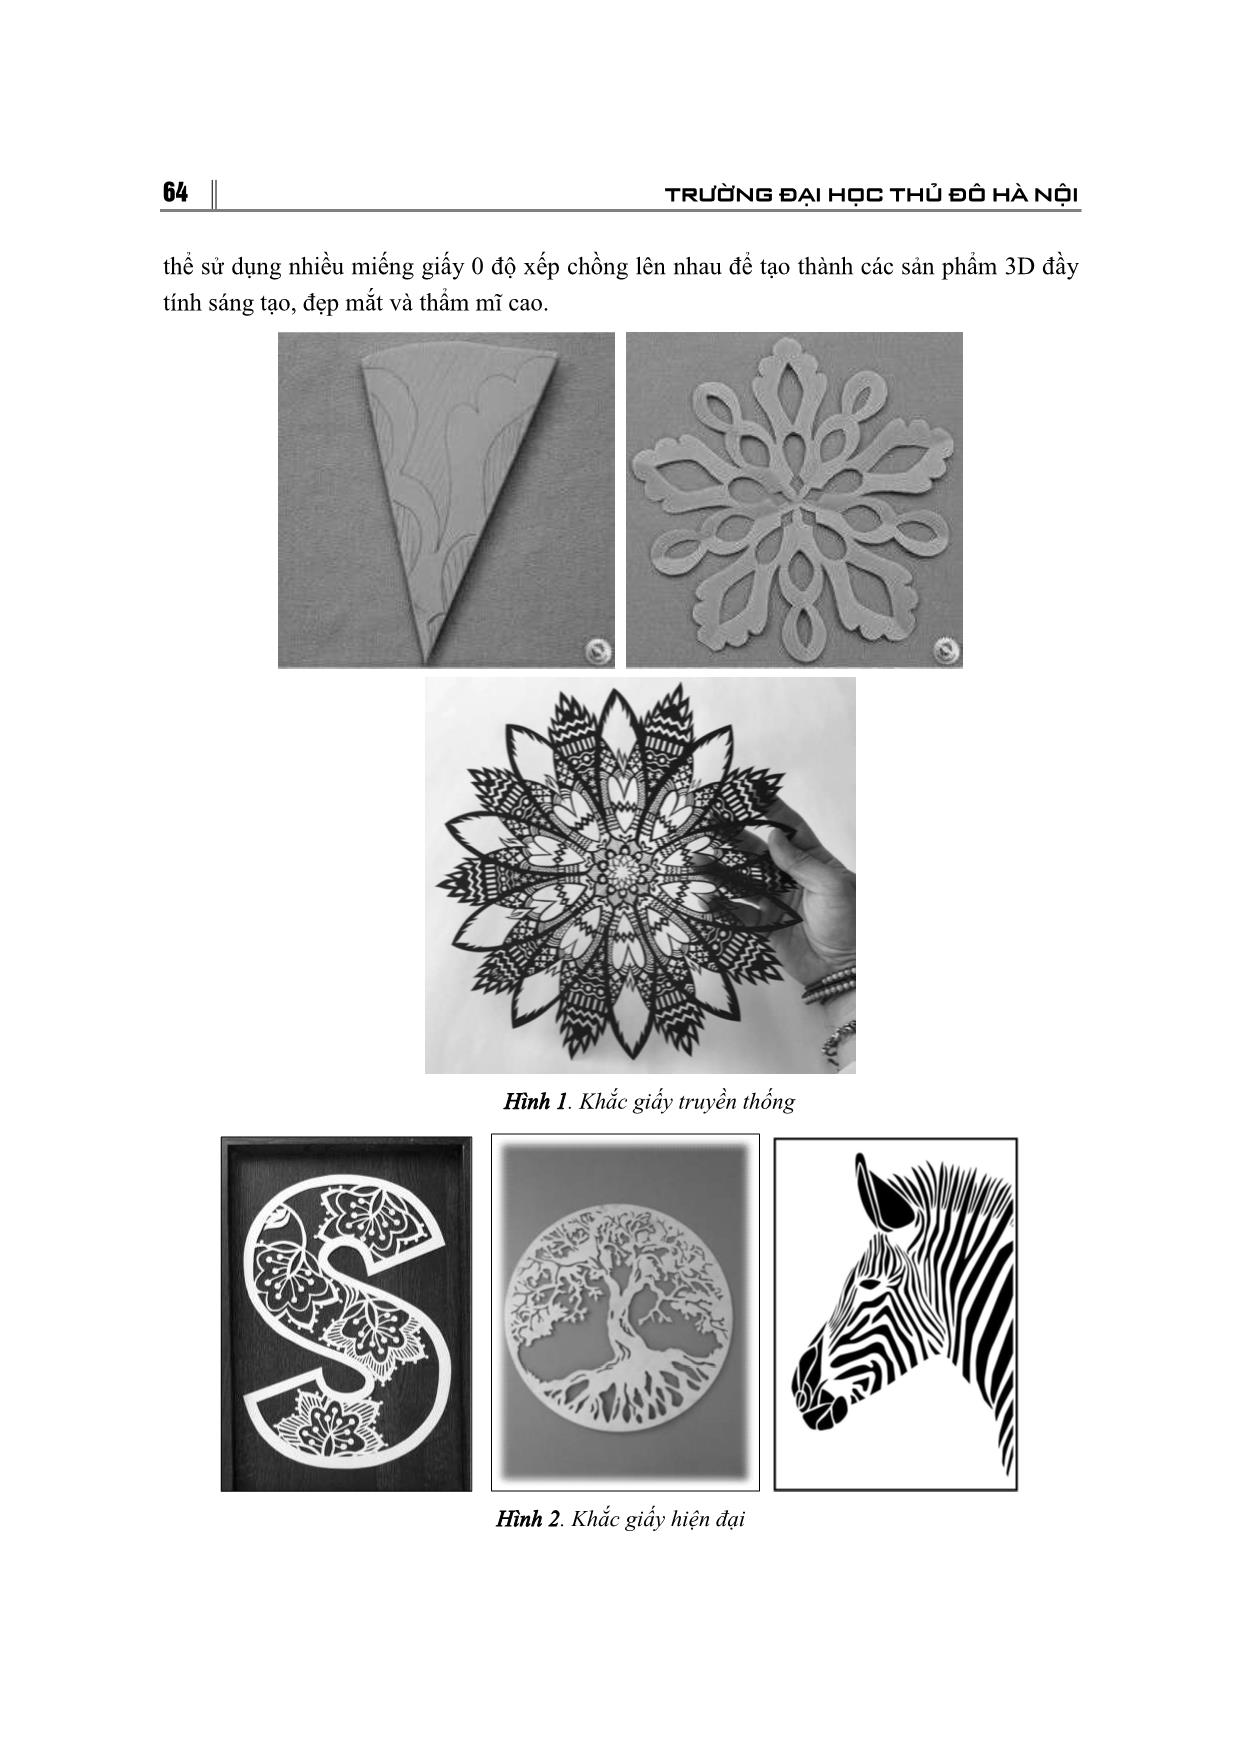 Sử dụng nghệ thuật khắc giấy trong dạy học mĩ thuật cho sinh viên ngành giáo dục tiểu học – Trường đại học thủ đô Hà Nội trang 3